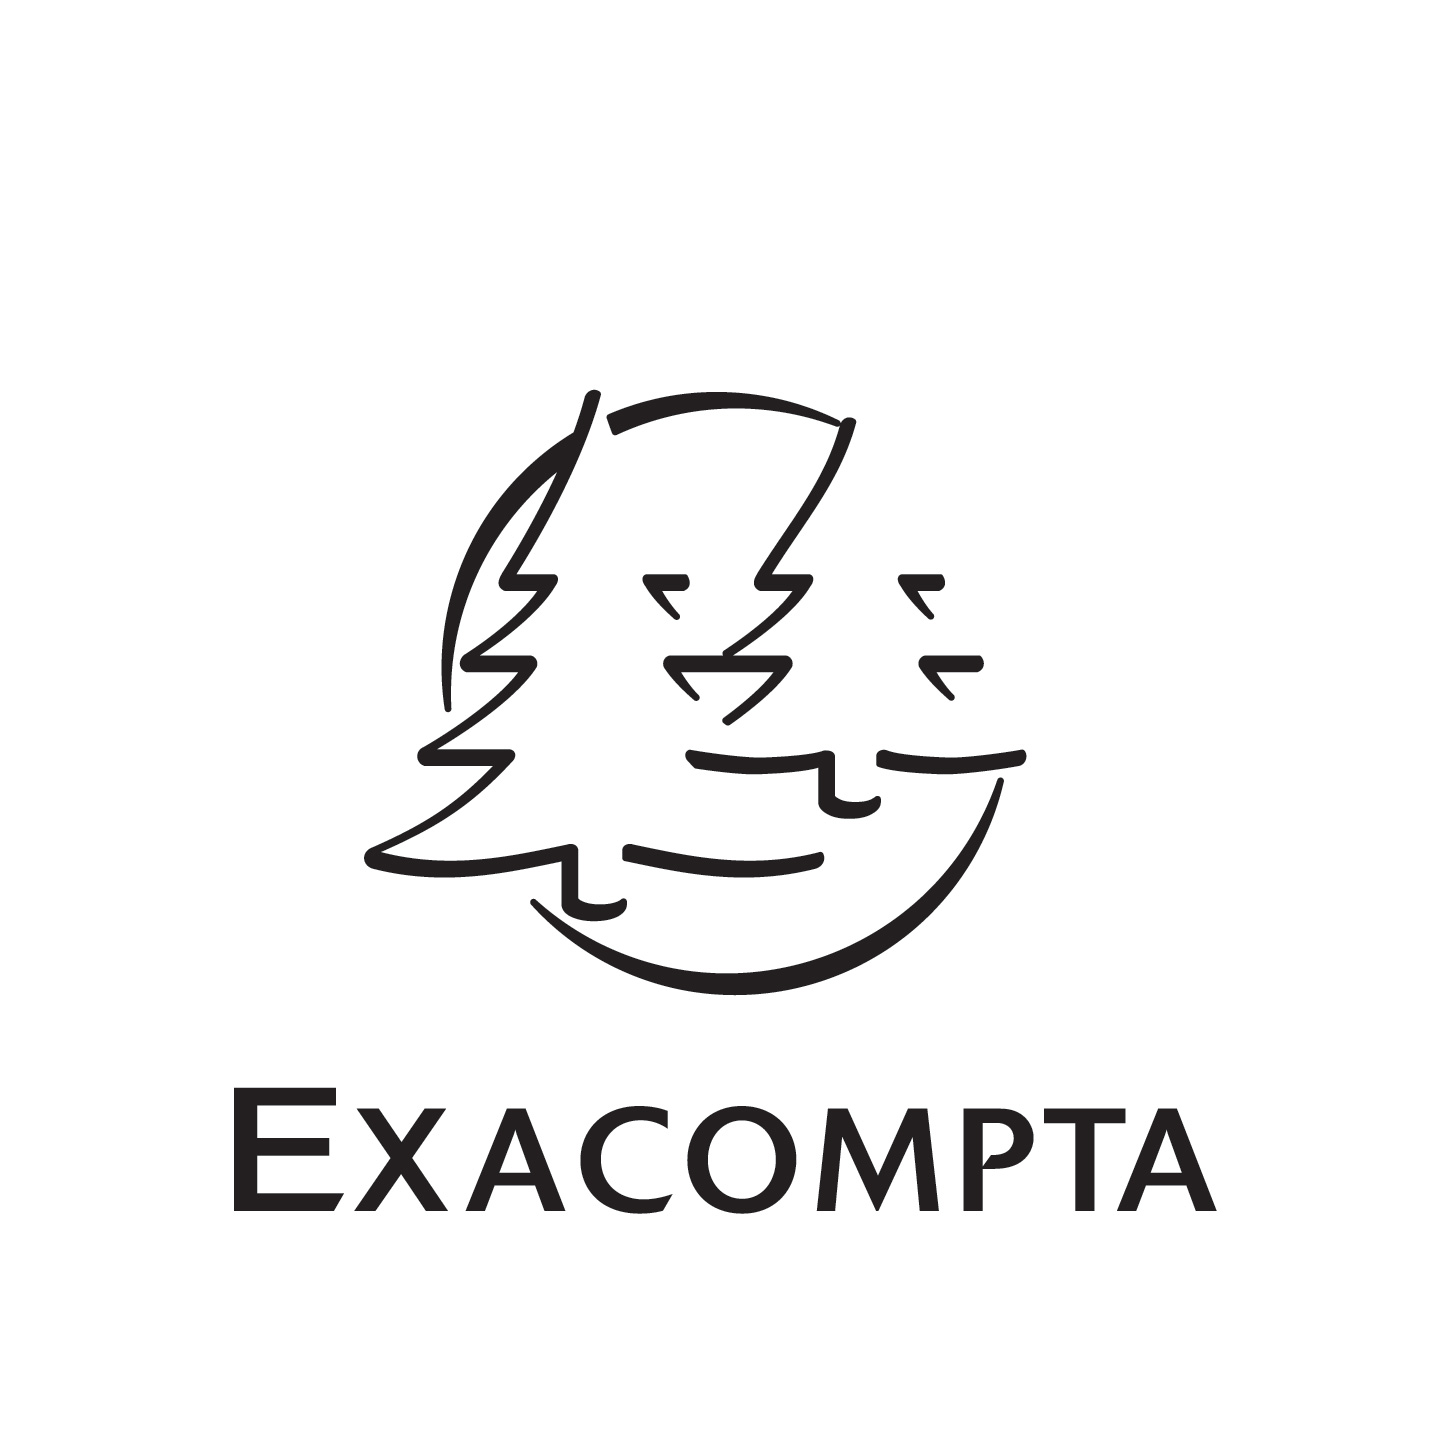 exacompta_logo_white